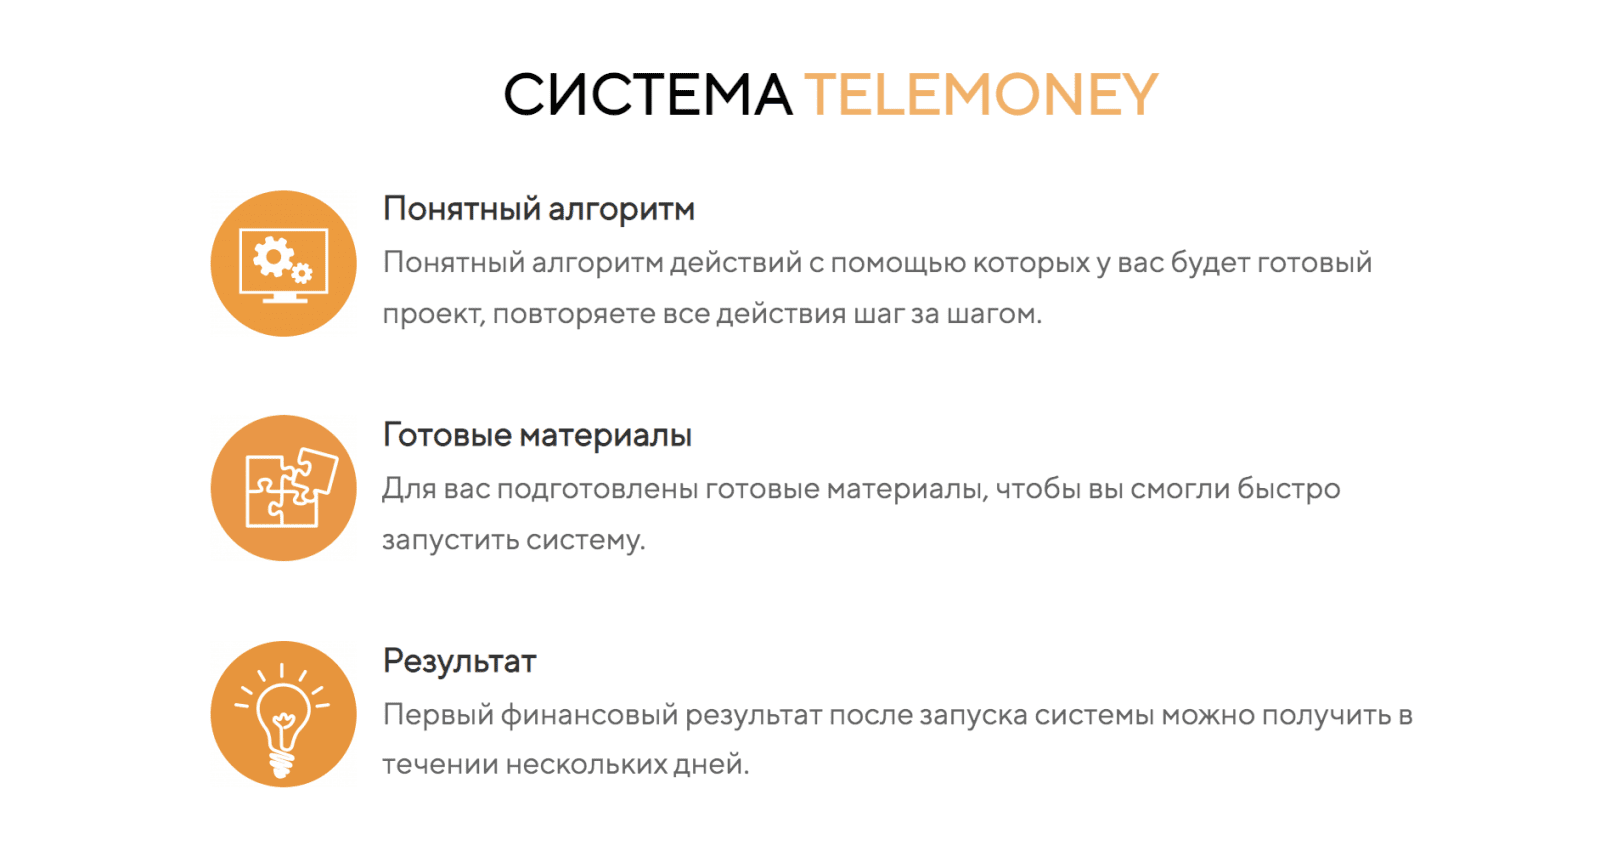 Изображение [Сергей Аристов] Telemoney (2021) [Тариф БАЗОВЫЙ] в посте 248299